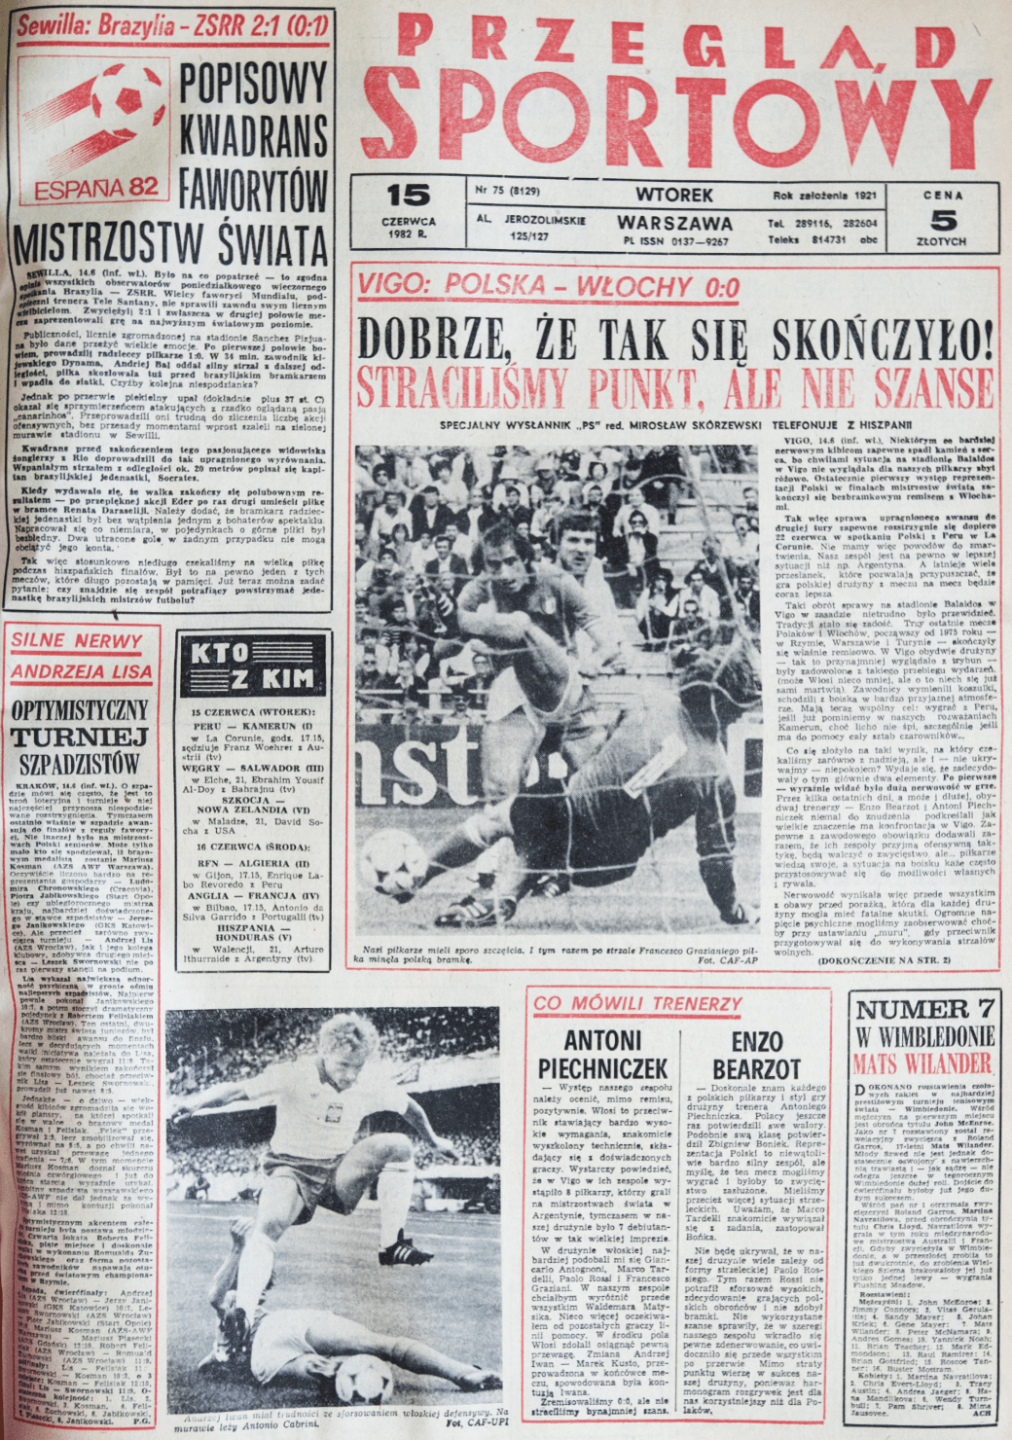 Okładka przeglądu sportowego po meczu Polska - Włochy (14.06.1982)